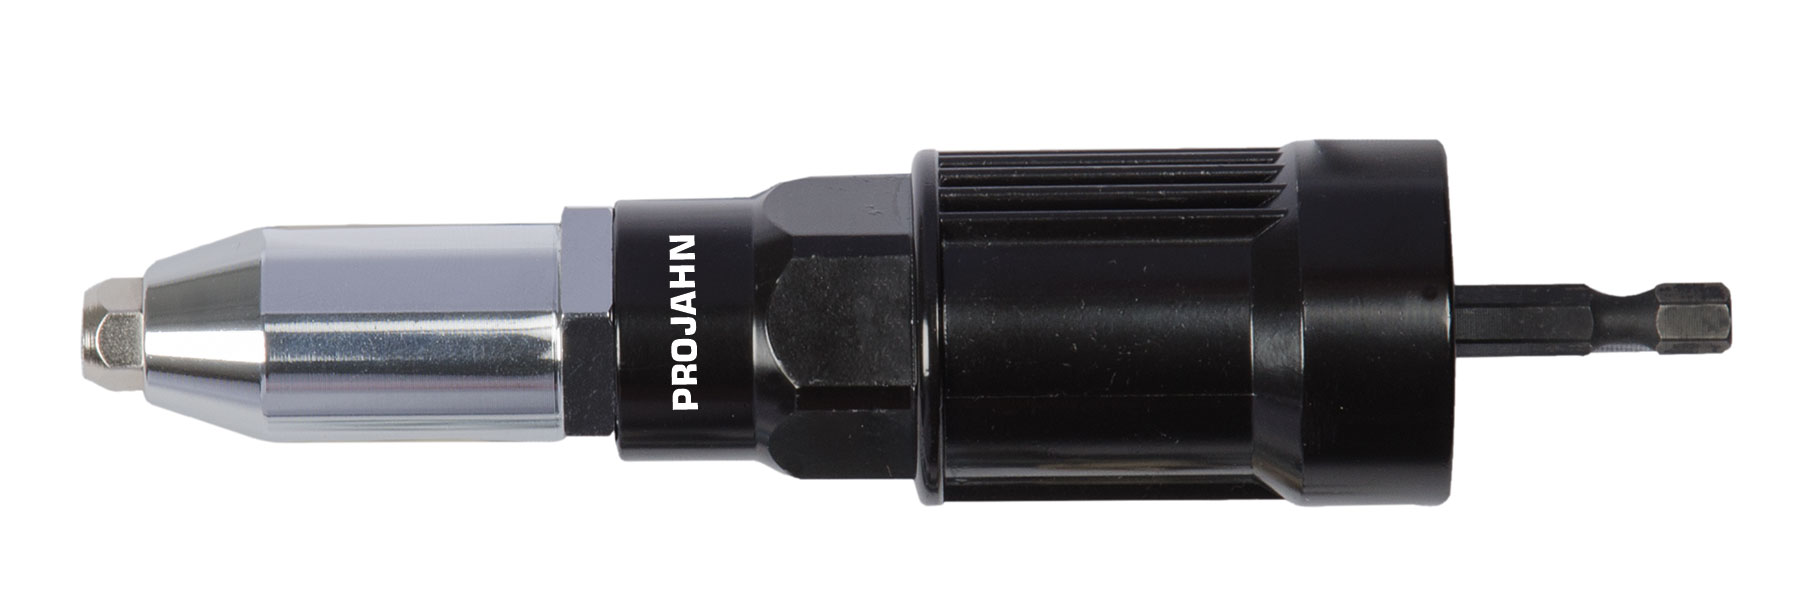 PROFI-Blindnietvorsatz-Adapter ohne Haltegriff Zur Verarbeitung von Blindnieten der Durchmesser 2,4 / 3,0 / 3,2 / 4,0 / 4,8 /5,0 mm Artikeldetailansicht